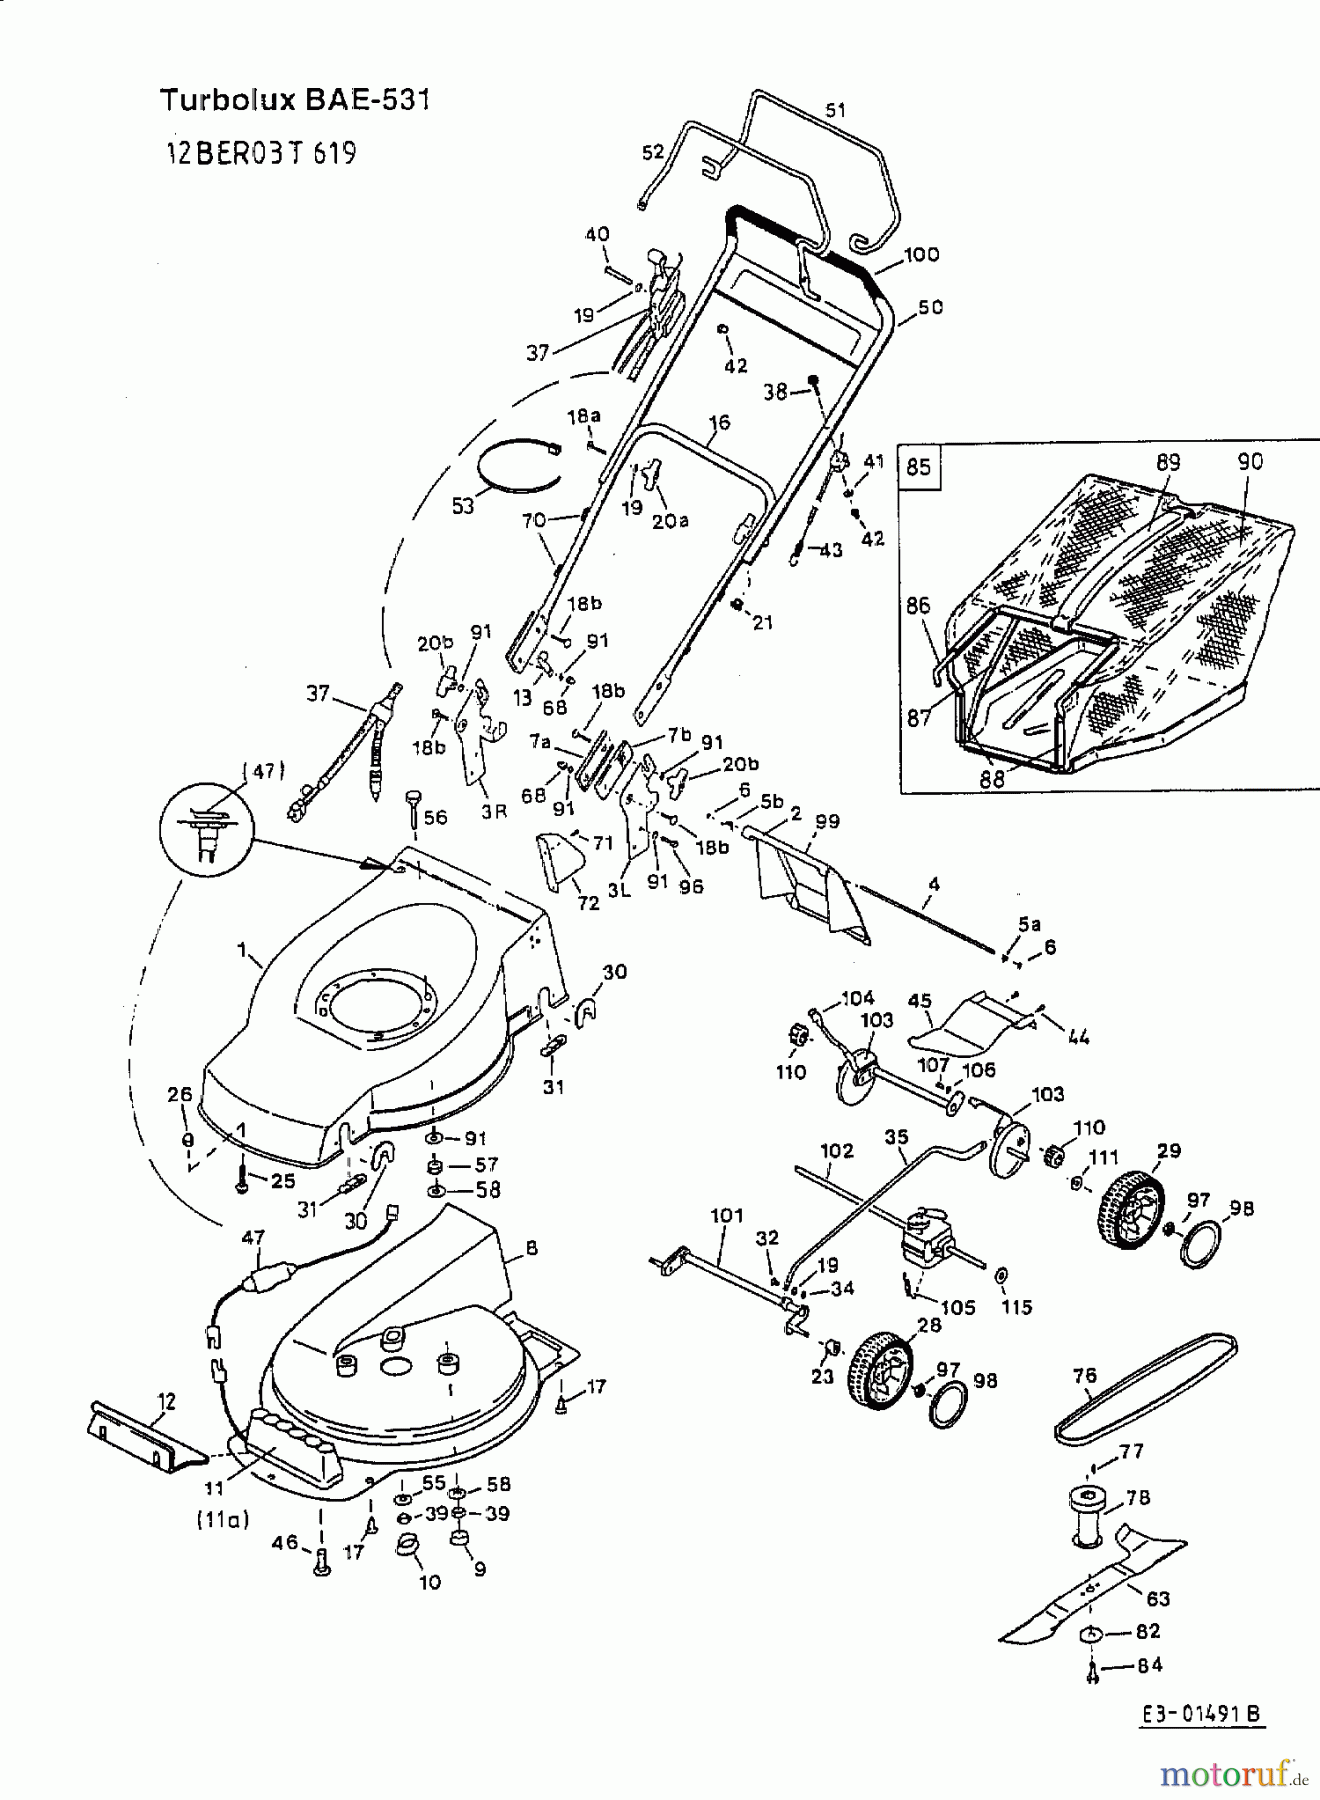  Fleurelle Motormäher mit Antrieb BAE 531 12BER03T619  (2001) Grundgerät